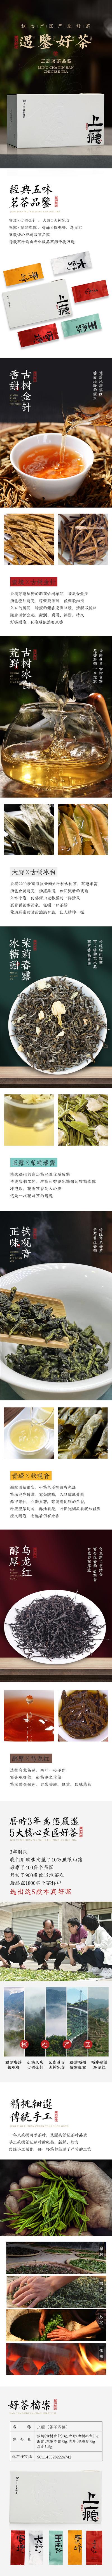 南门网 茶叶品鉴装详情页